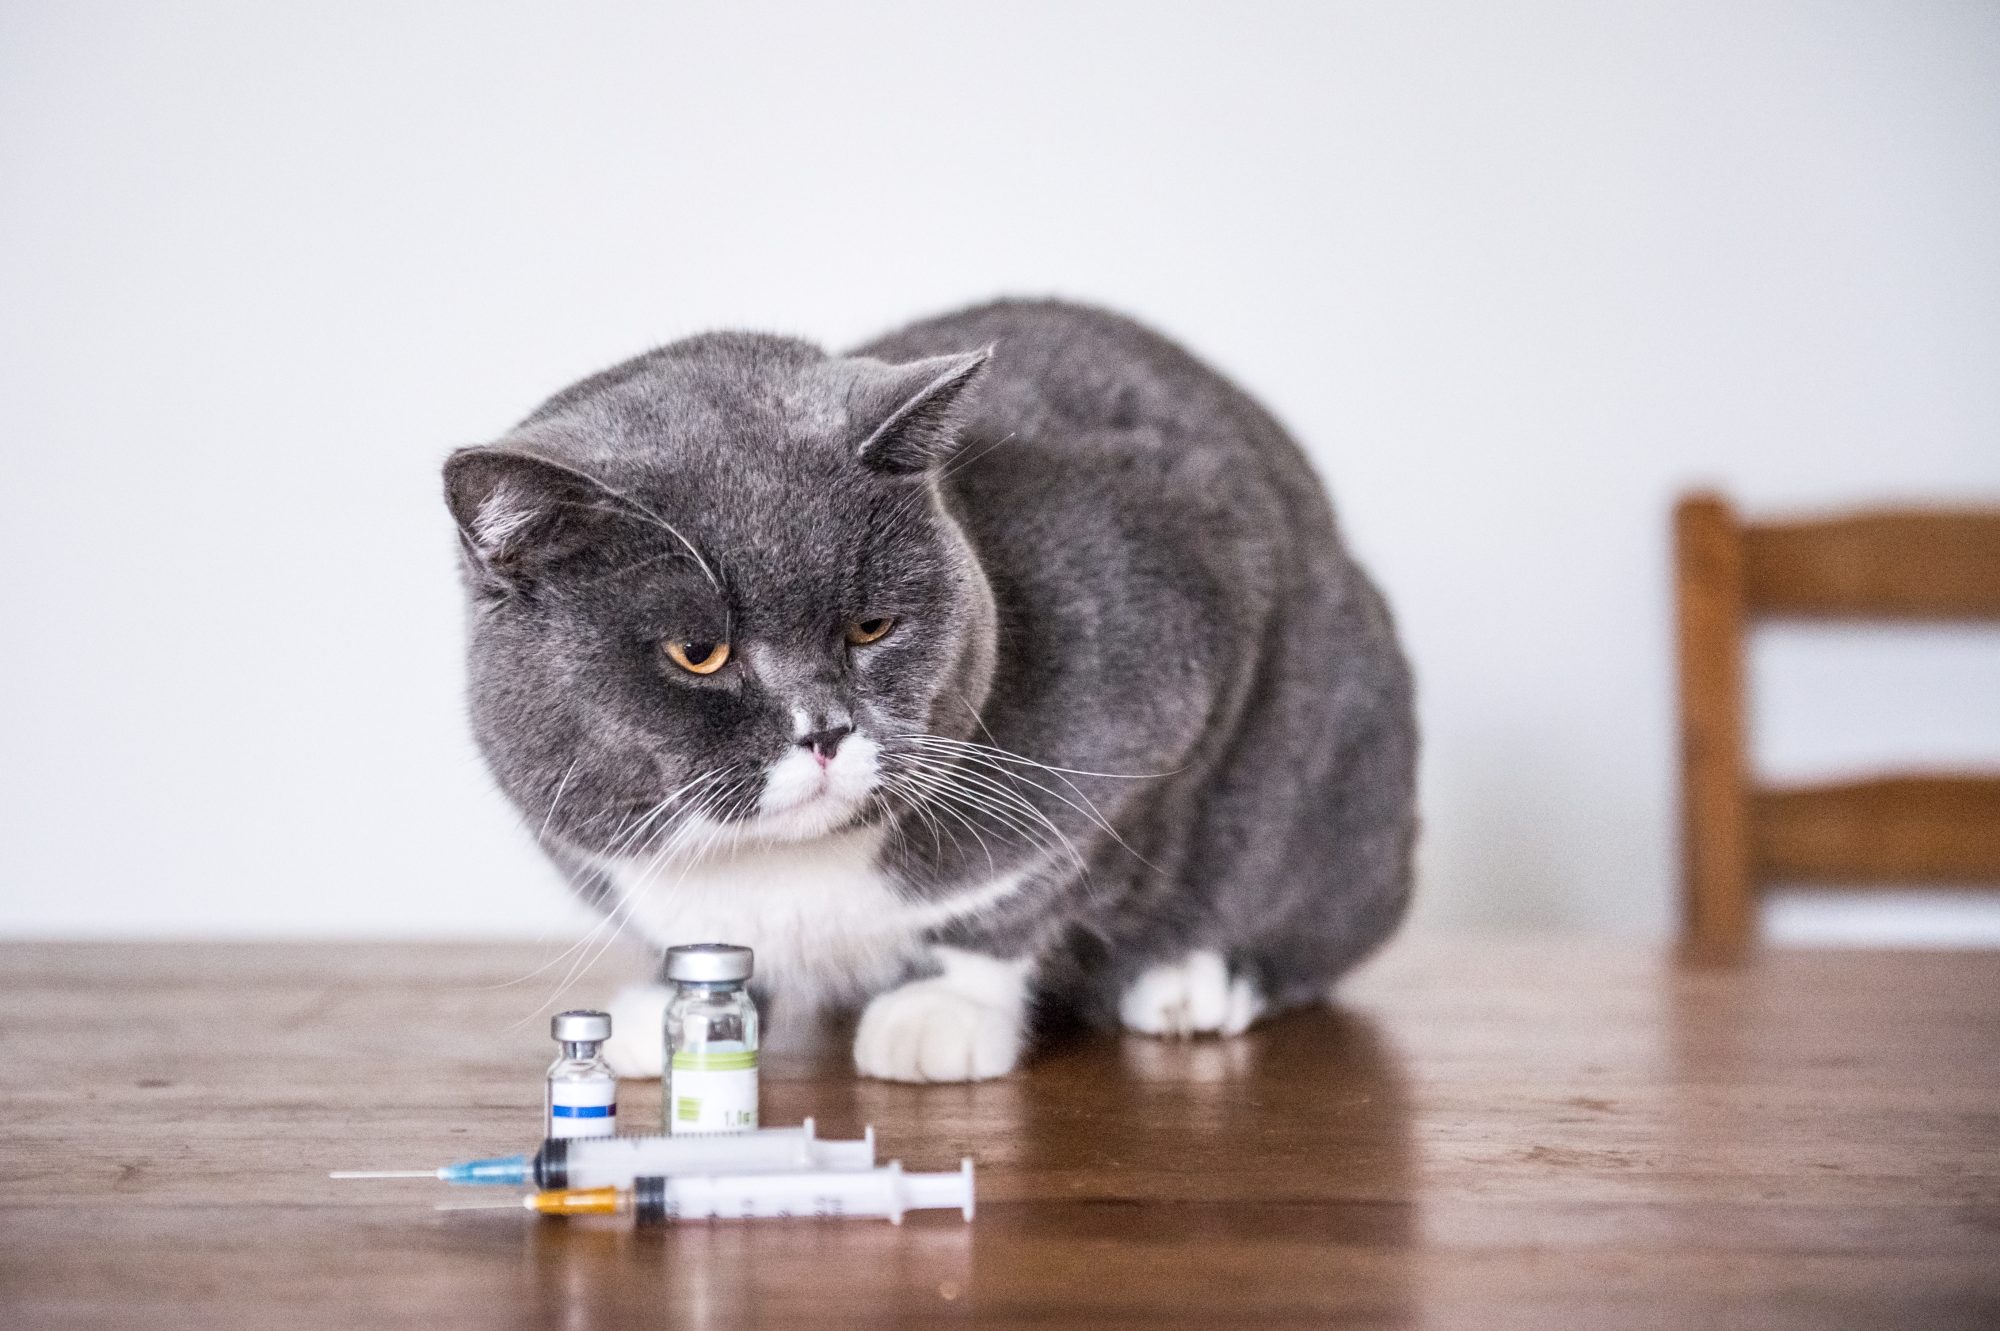 Cat getting insulin shots.